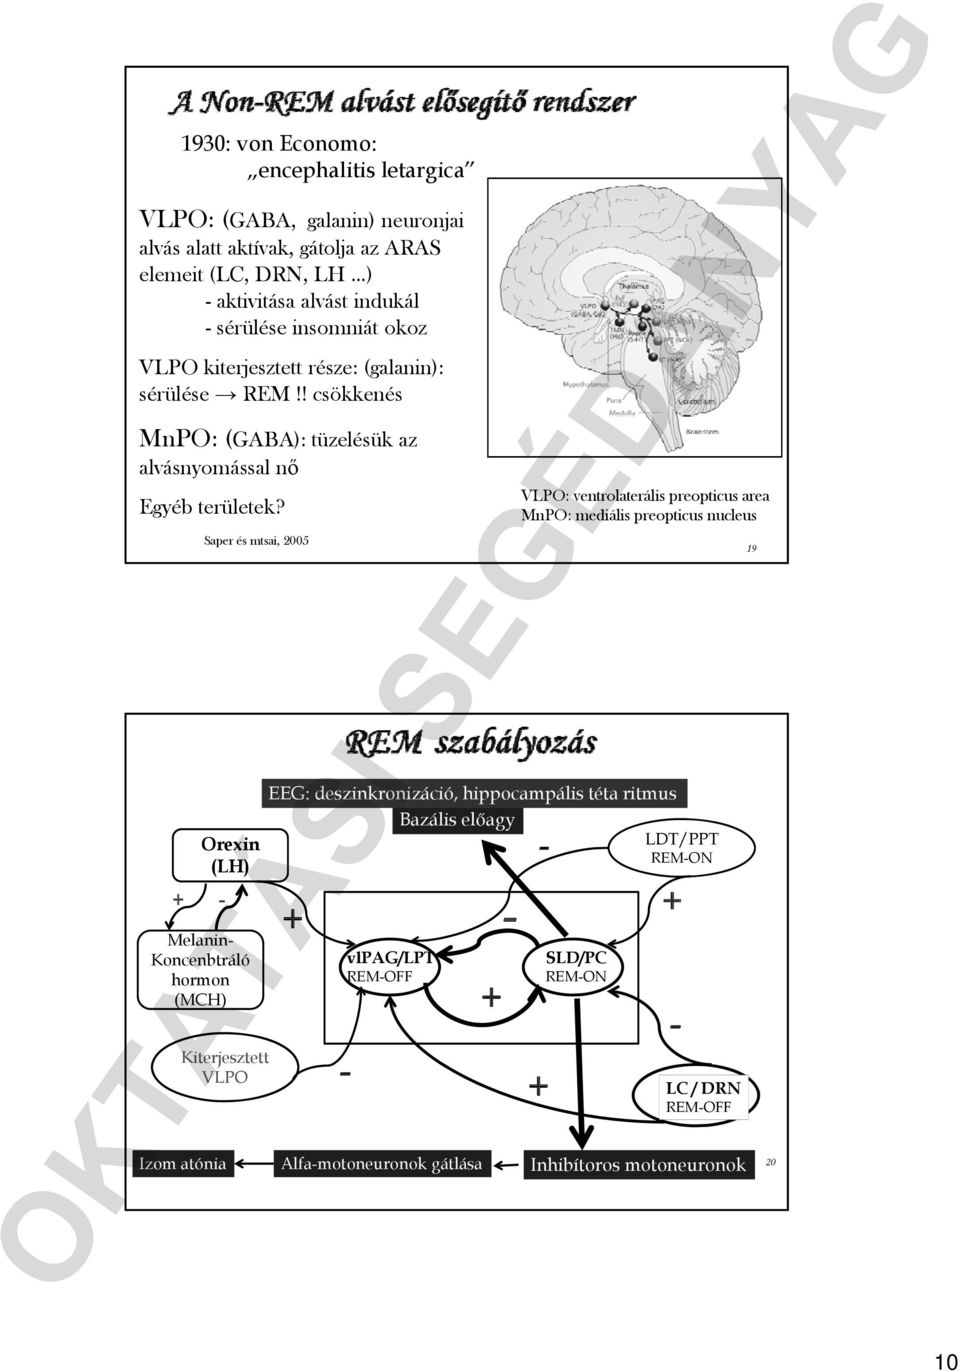 + - Saper és mtsai, 25 Orexin (LH) Melanin- Koncenbtráló hormon (MCH) VLPO: ventrolaterális preopticus area MnPO: mediális preopticus nucleus EEG: deszinkronizáció,